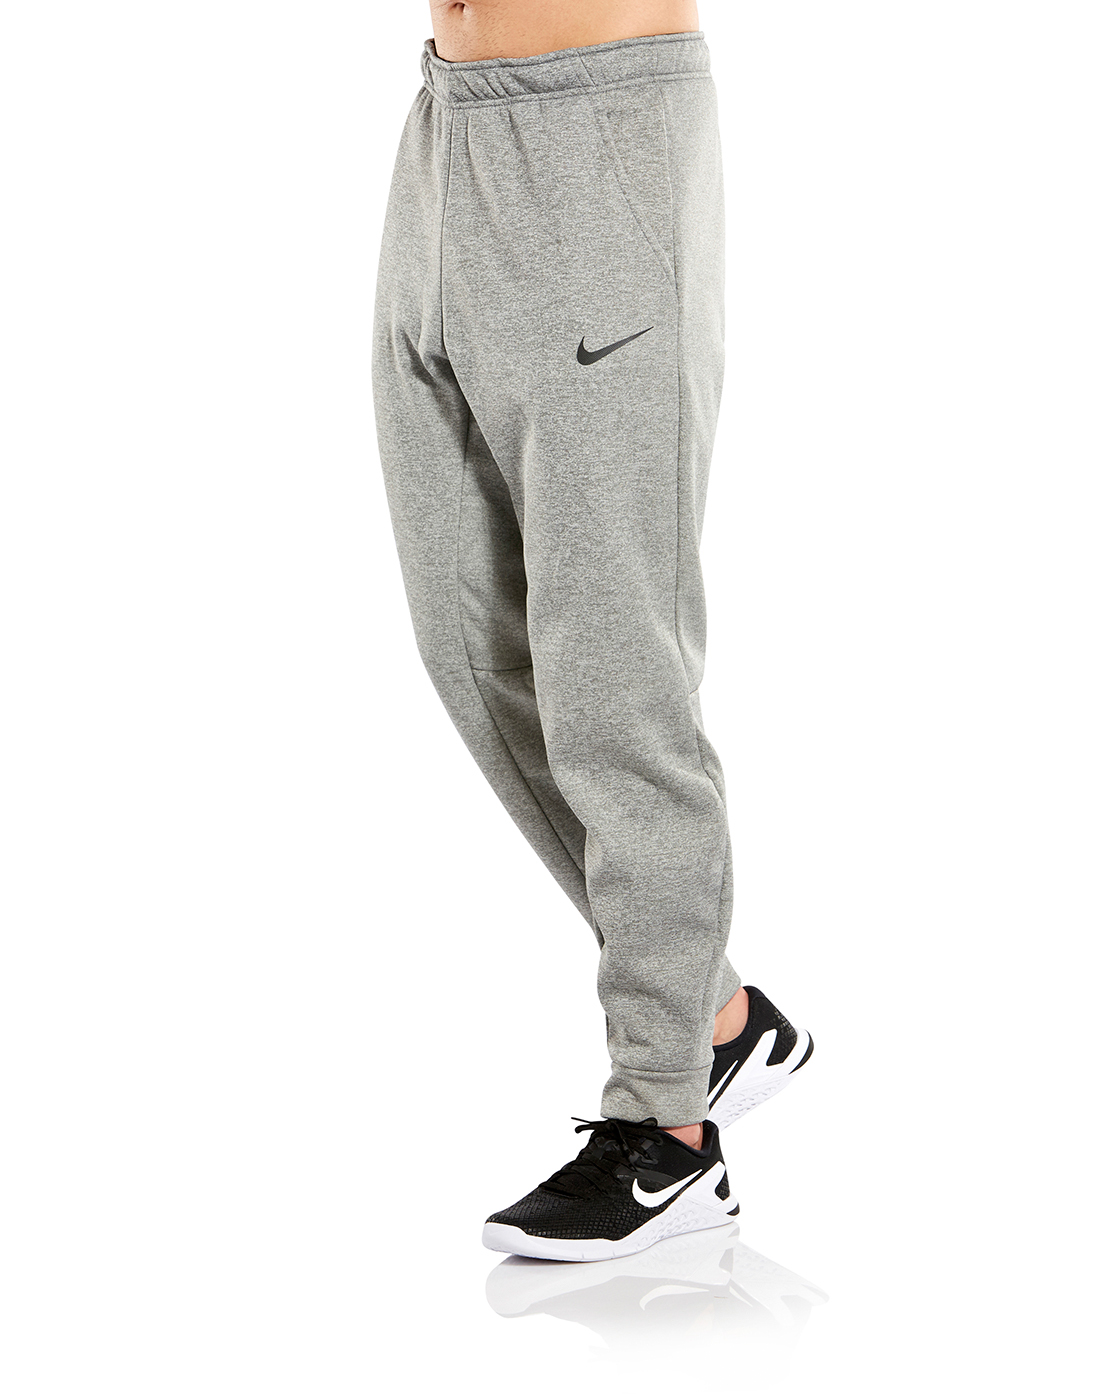 Men's Grey Nike Therma Pants | Life 